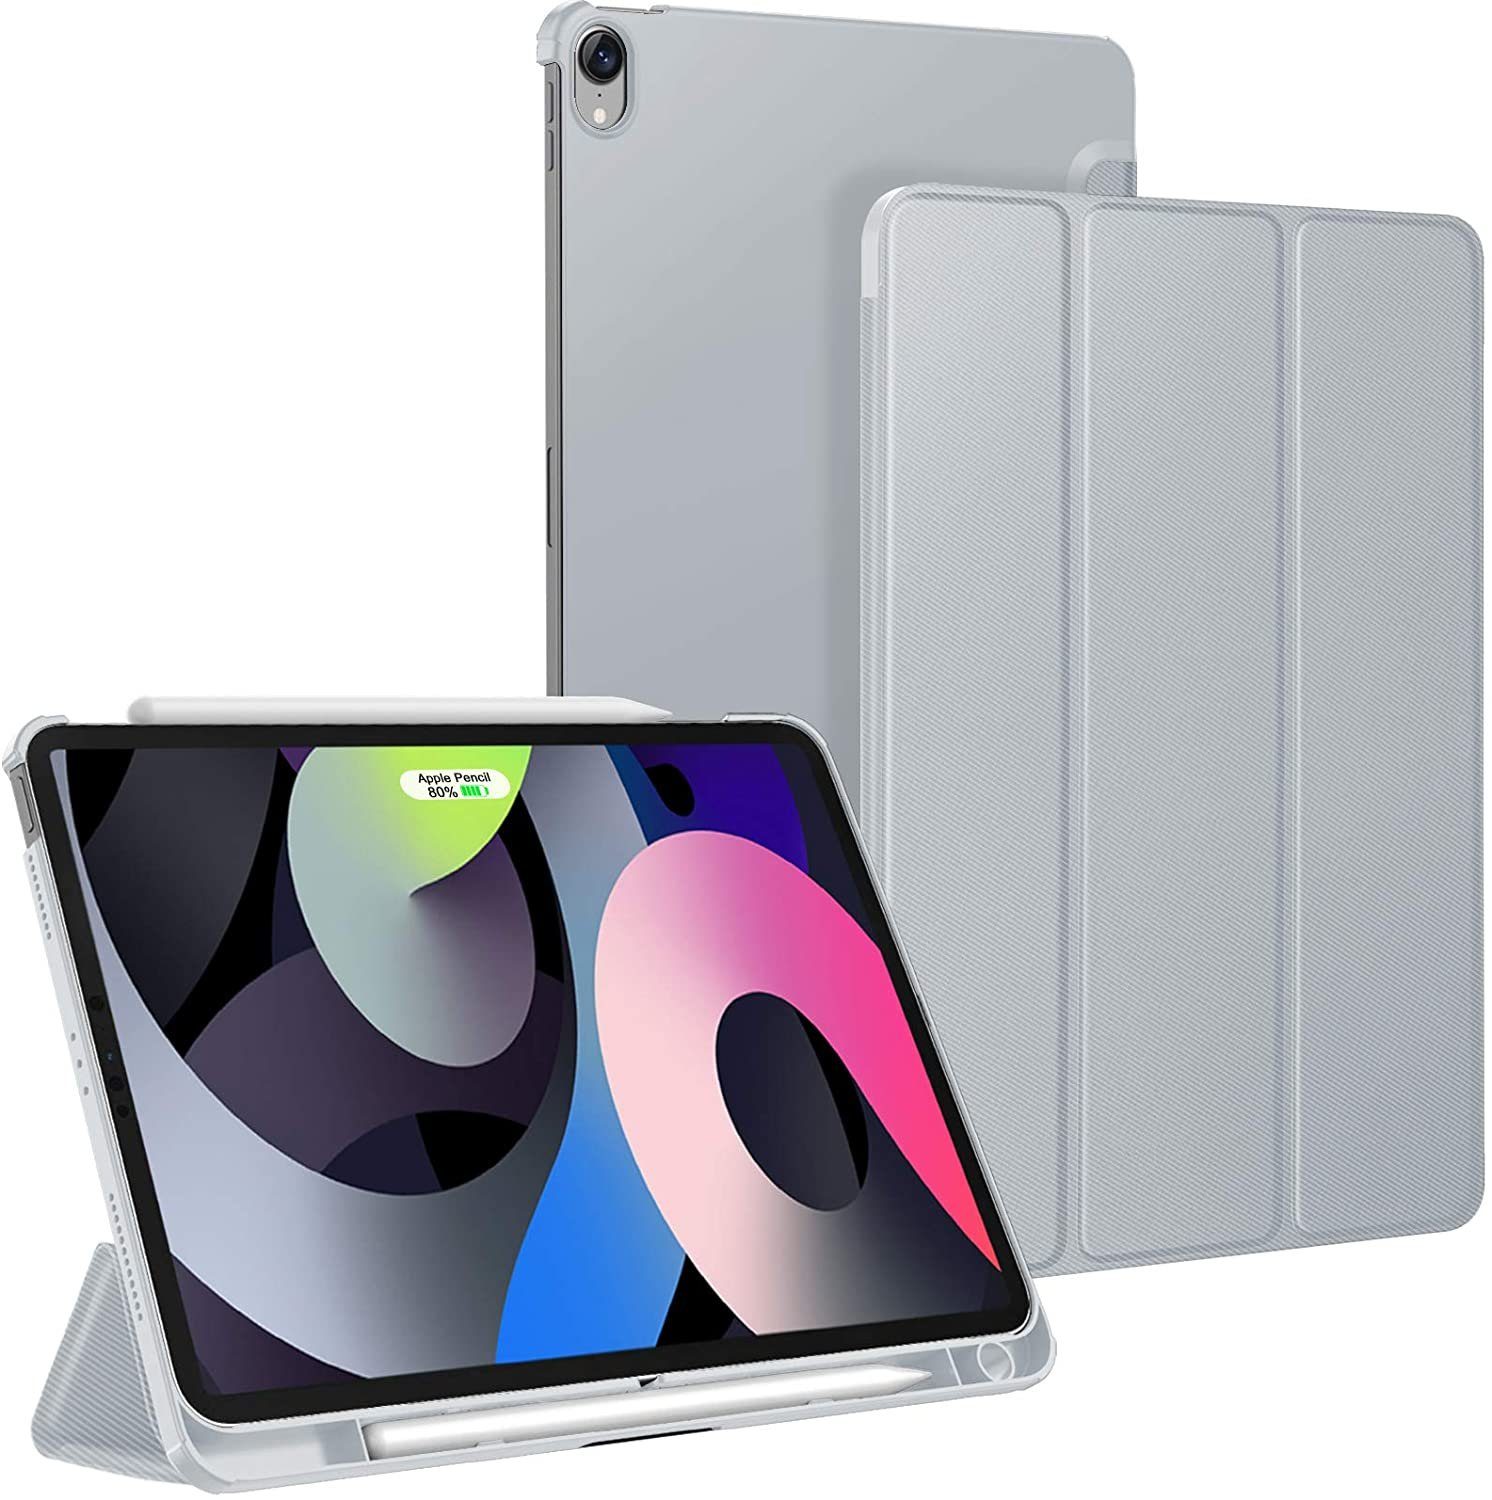 Generation 2020 iPad 10.9 Zoll 2020 Hülle Case Leder Tasche Schutzhülle Flip Cover Einschlaf/Aufwach Abdeckung Klapphülle Ständer Fächer Magnetverschluss Deckel Blau Tablethülle für iPad Air 4 